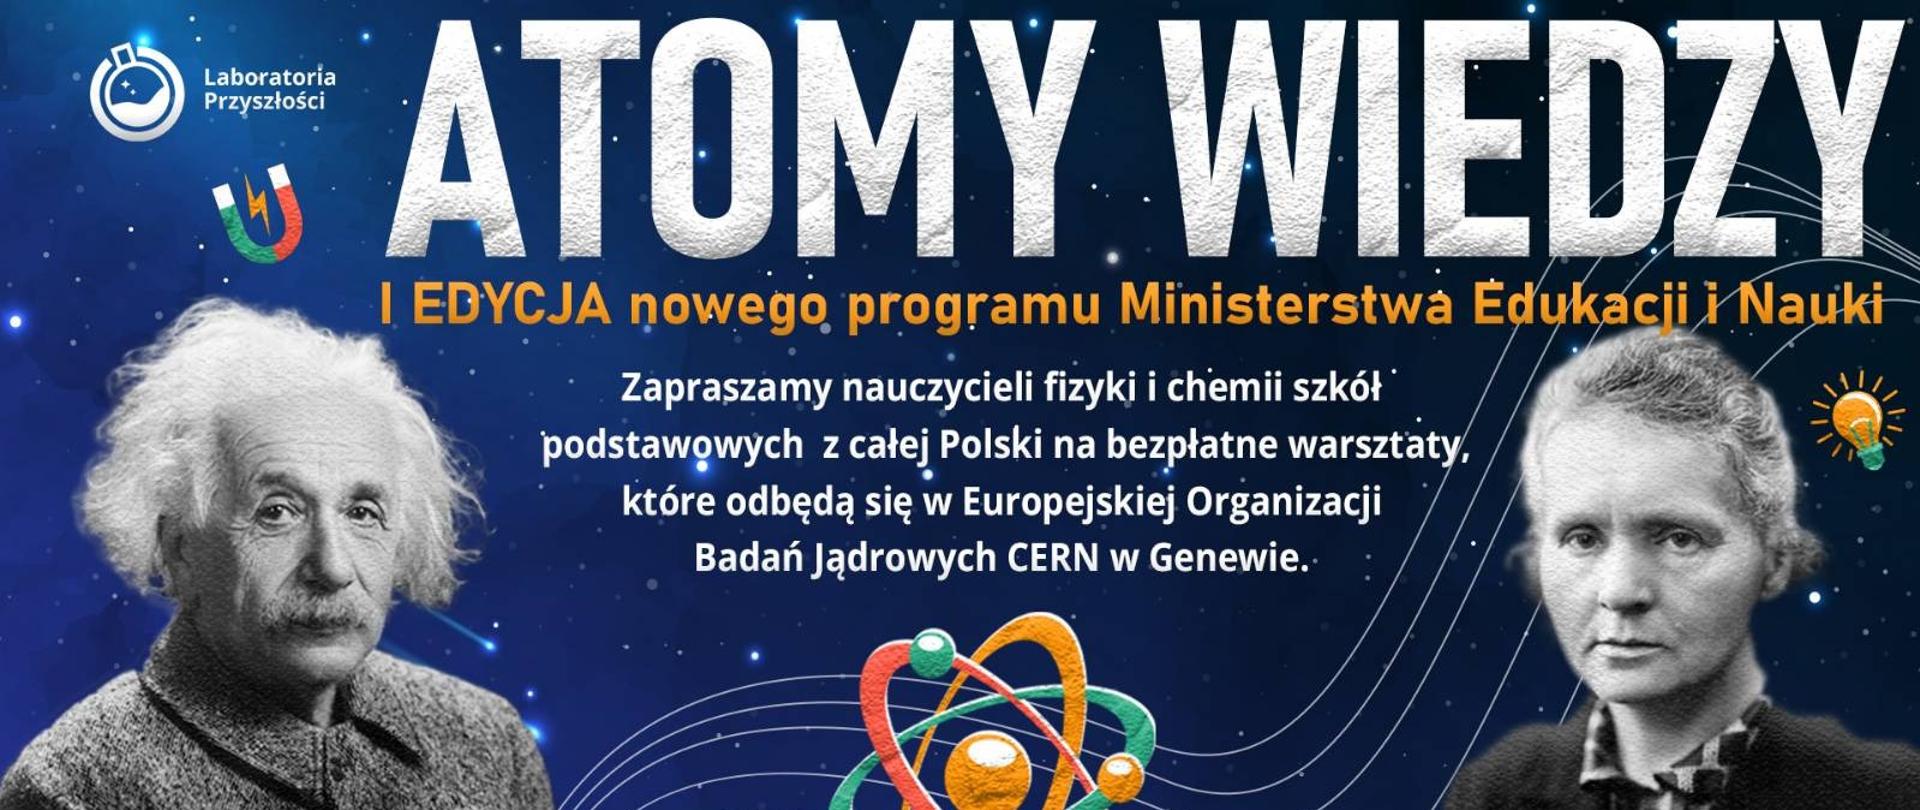 Atomy Wiedzy - 1 edycja programu Ministerstwa Edukacji i Nauki. Zapraszamy nauczycieli fizyki i chemii szkół podstawowych z całej Polski na bezpłatne warsztaty, które odbędą się w Europejskiej organizacji Badań Jądrowych CERN w Genewie. Logotypy instytucji MeinTech.